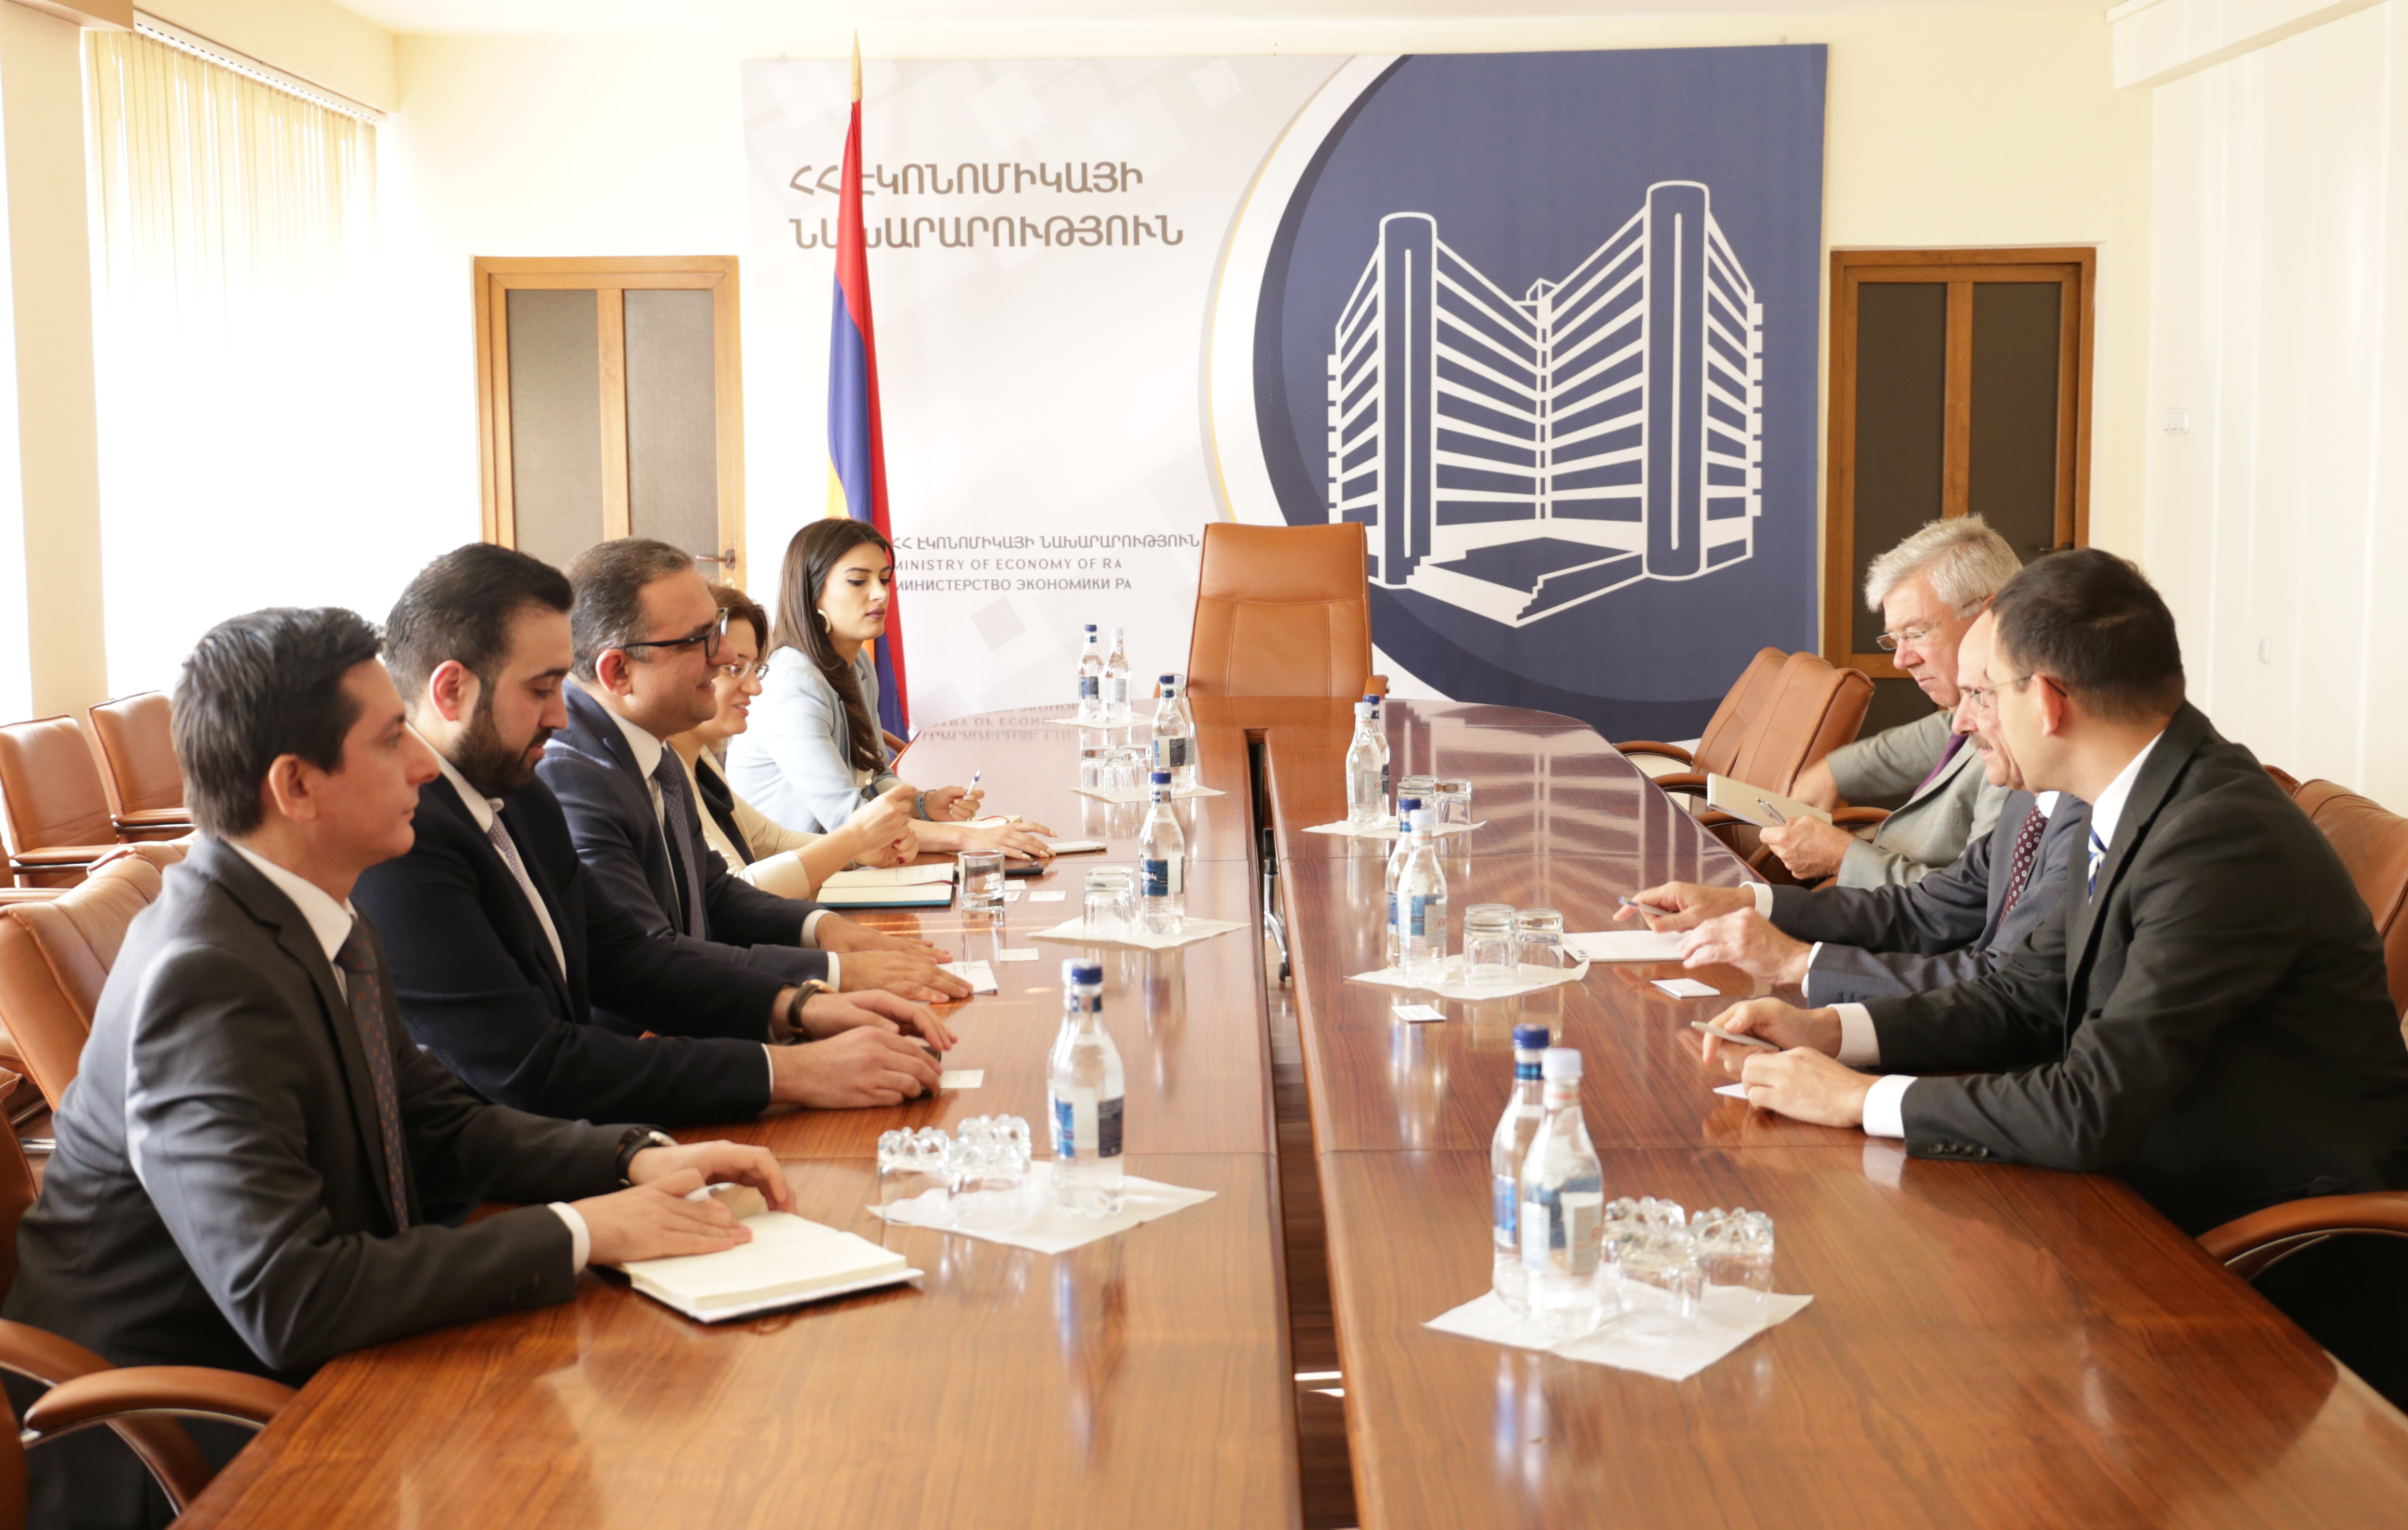 Армения может стать связующим звеном с ЕАЭС и другими соседними странами - посол Германии